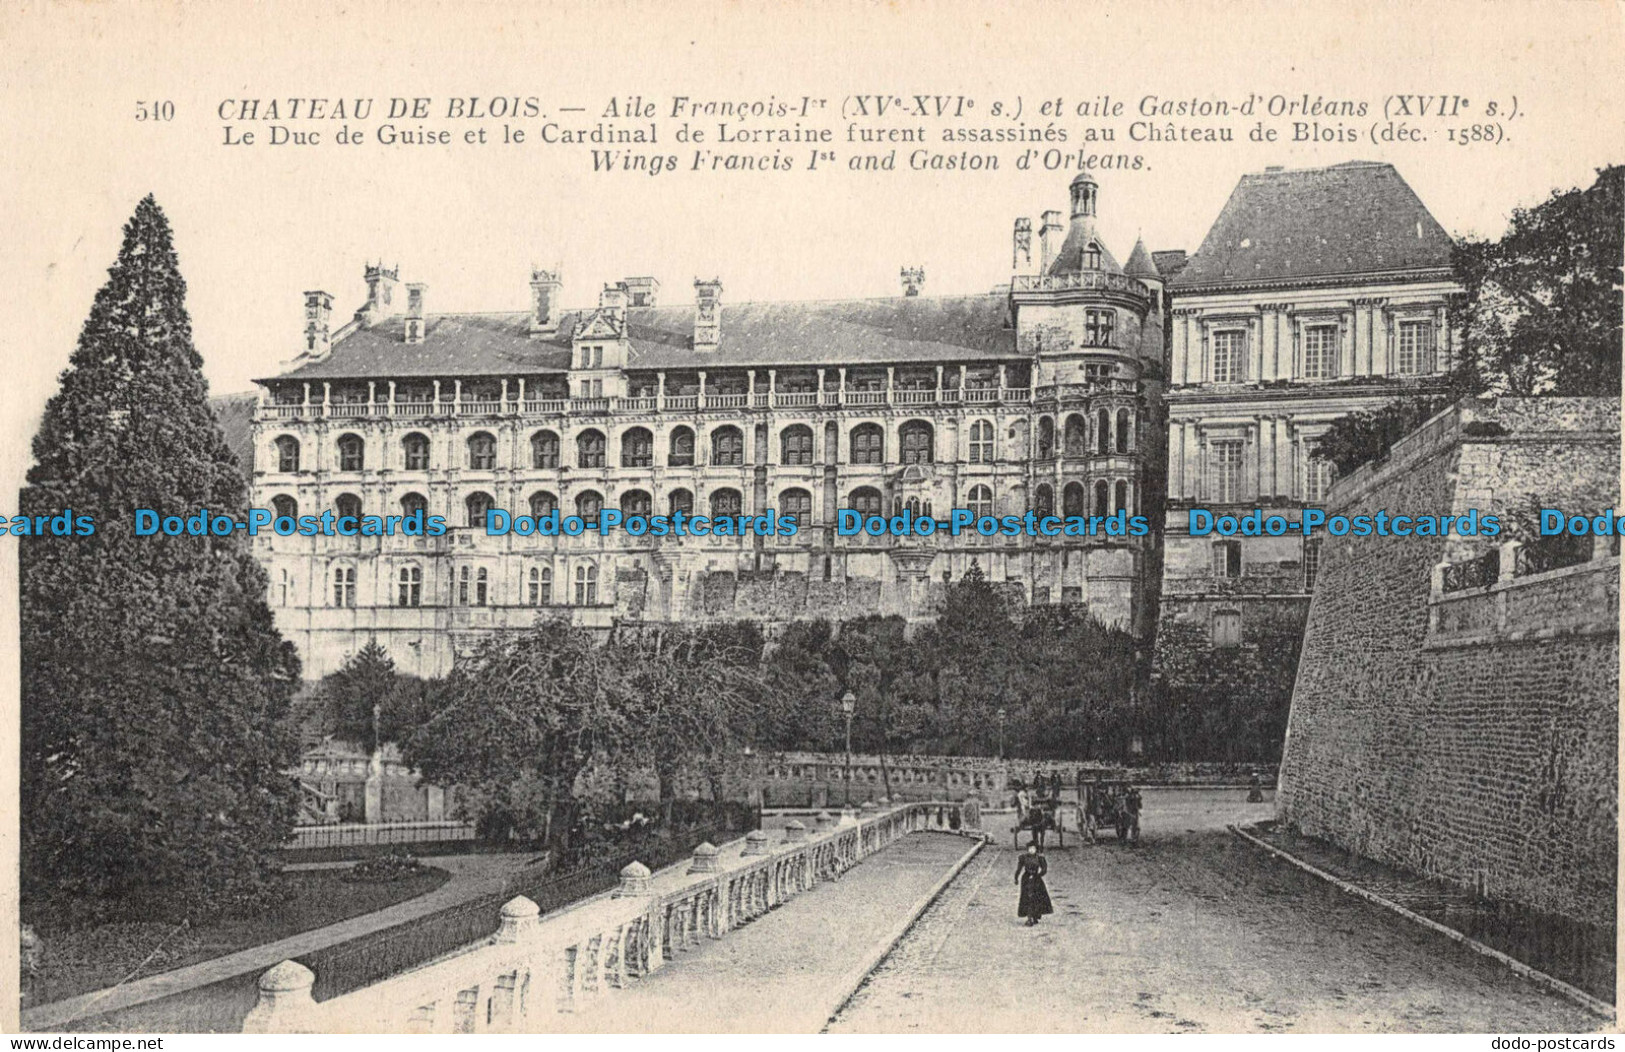 R094346 Chateau De Blois. Wings Francis Ist And Gaston D Orleans. No 540 - Monde